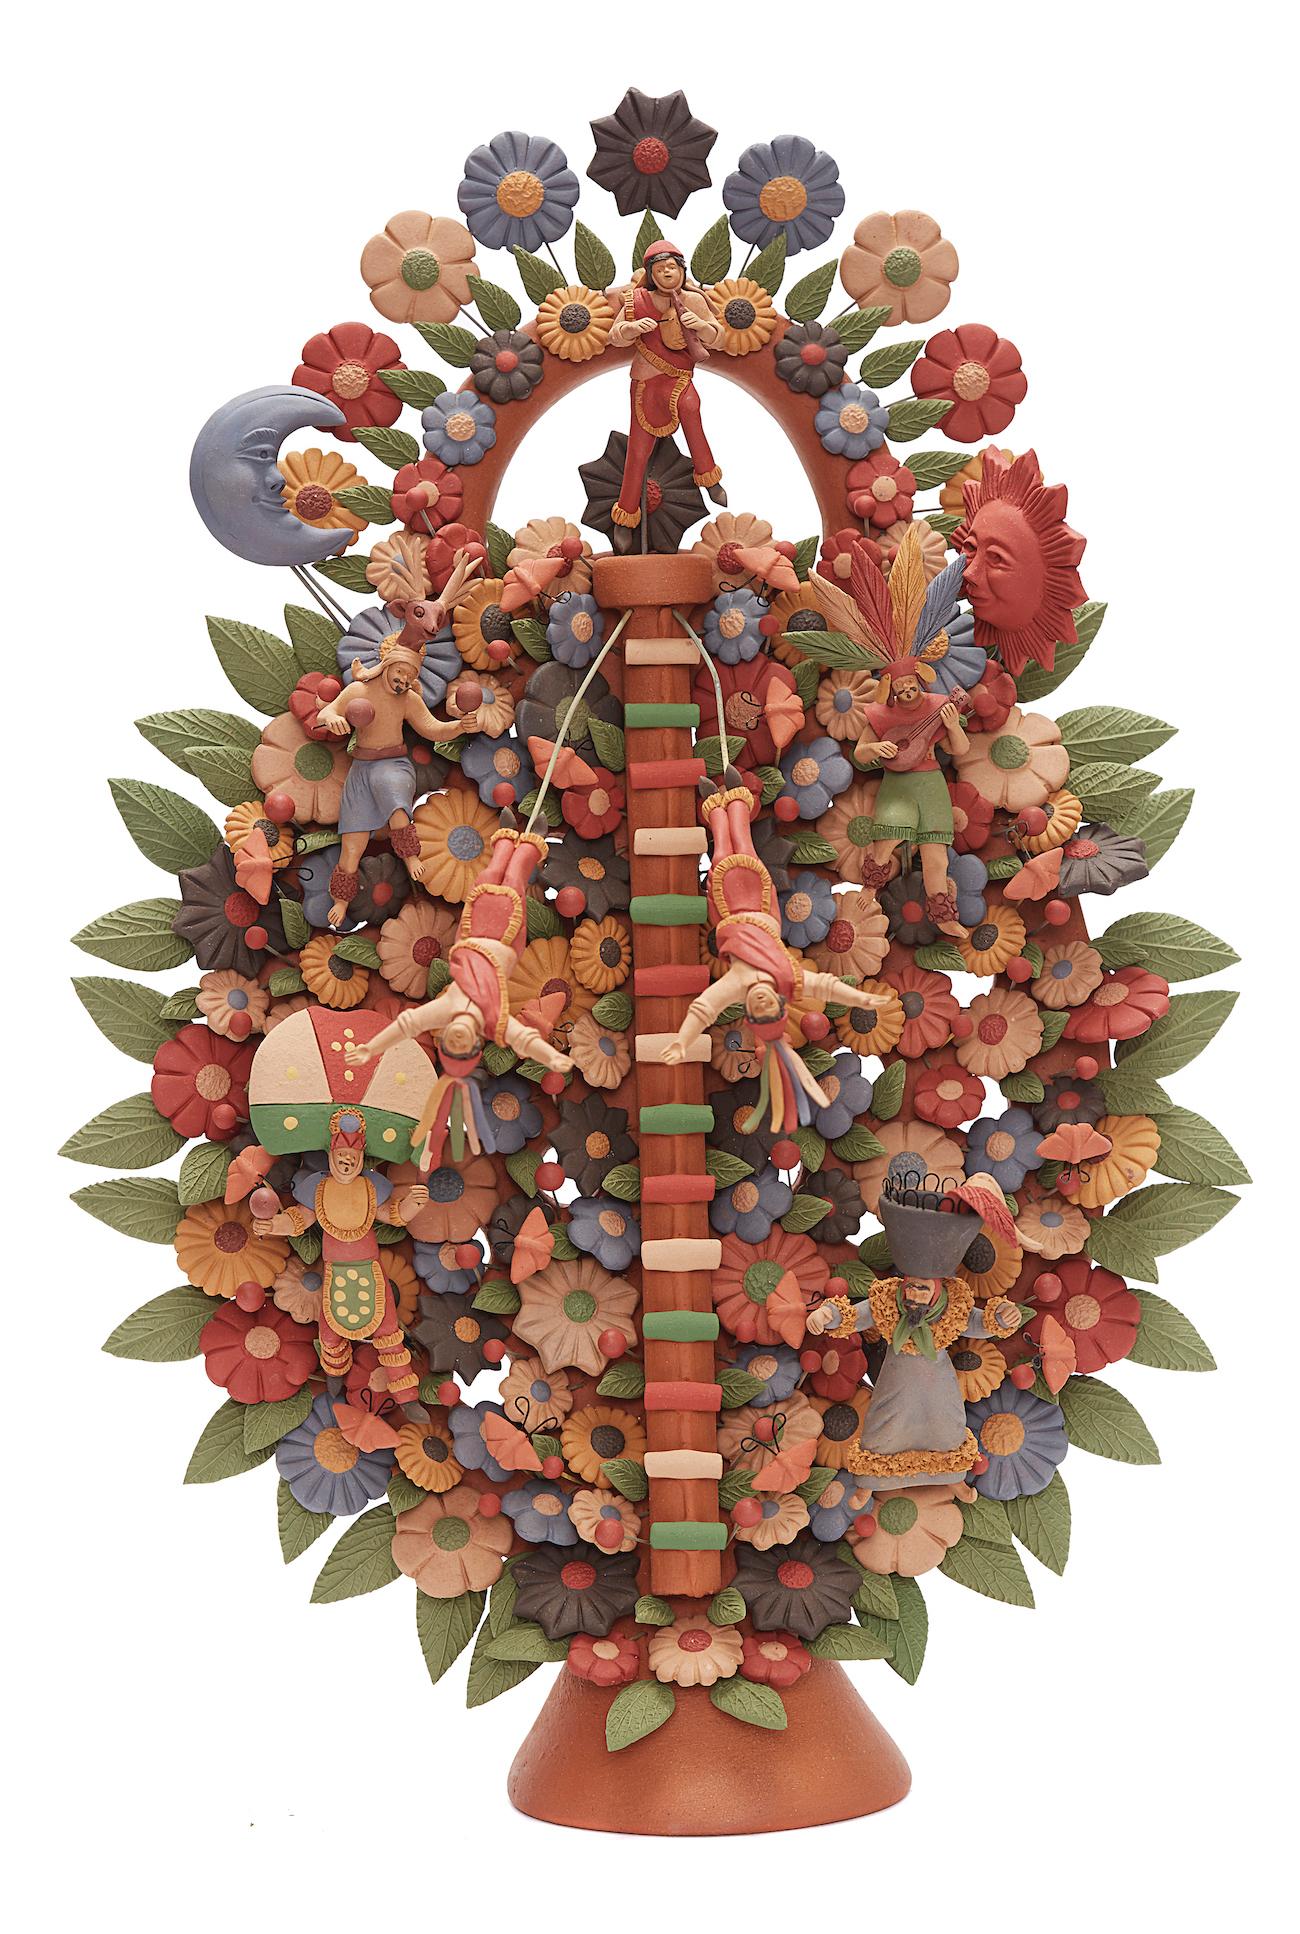 Arbol de Danzantes - Dancers Tree / Ceramics Mexican Folk Art Clay 12